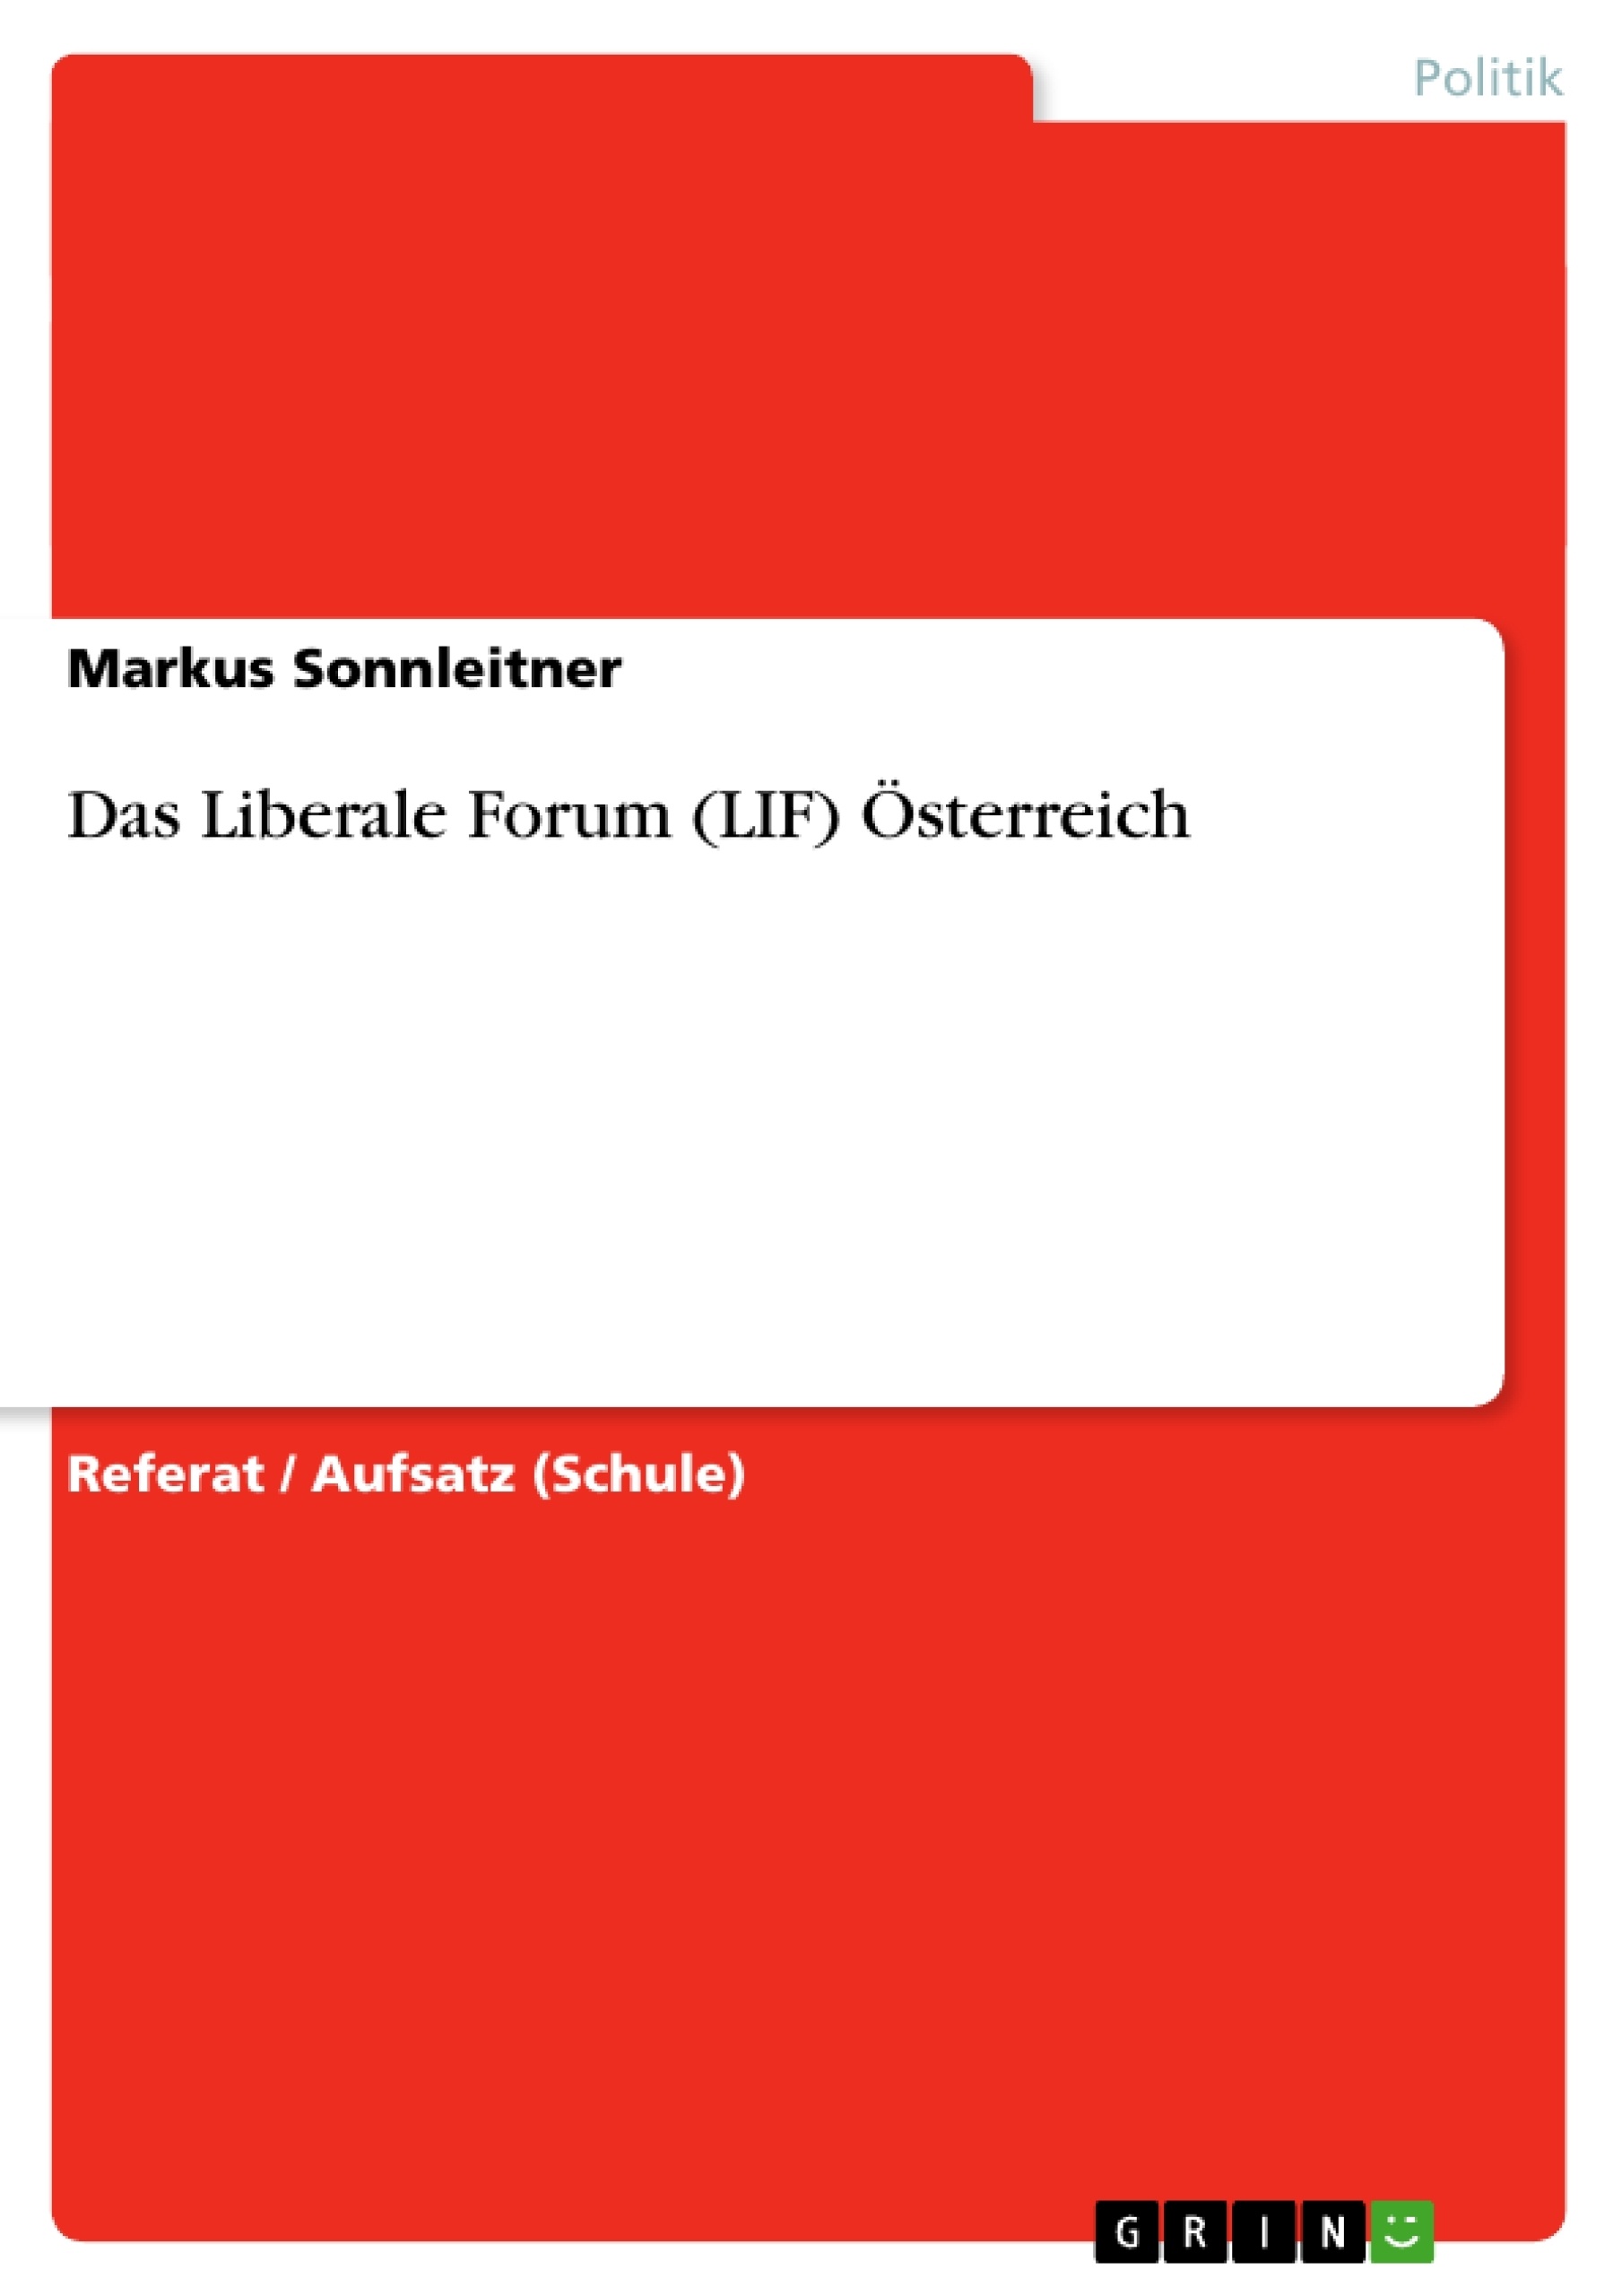 Titre: Das Liberale Forum (LIF) Österreich